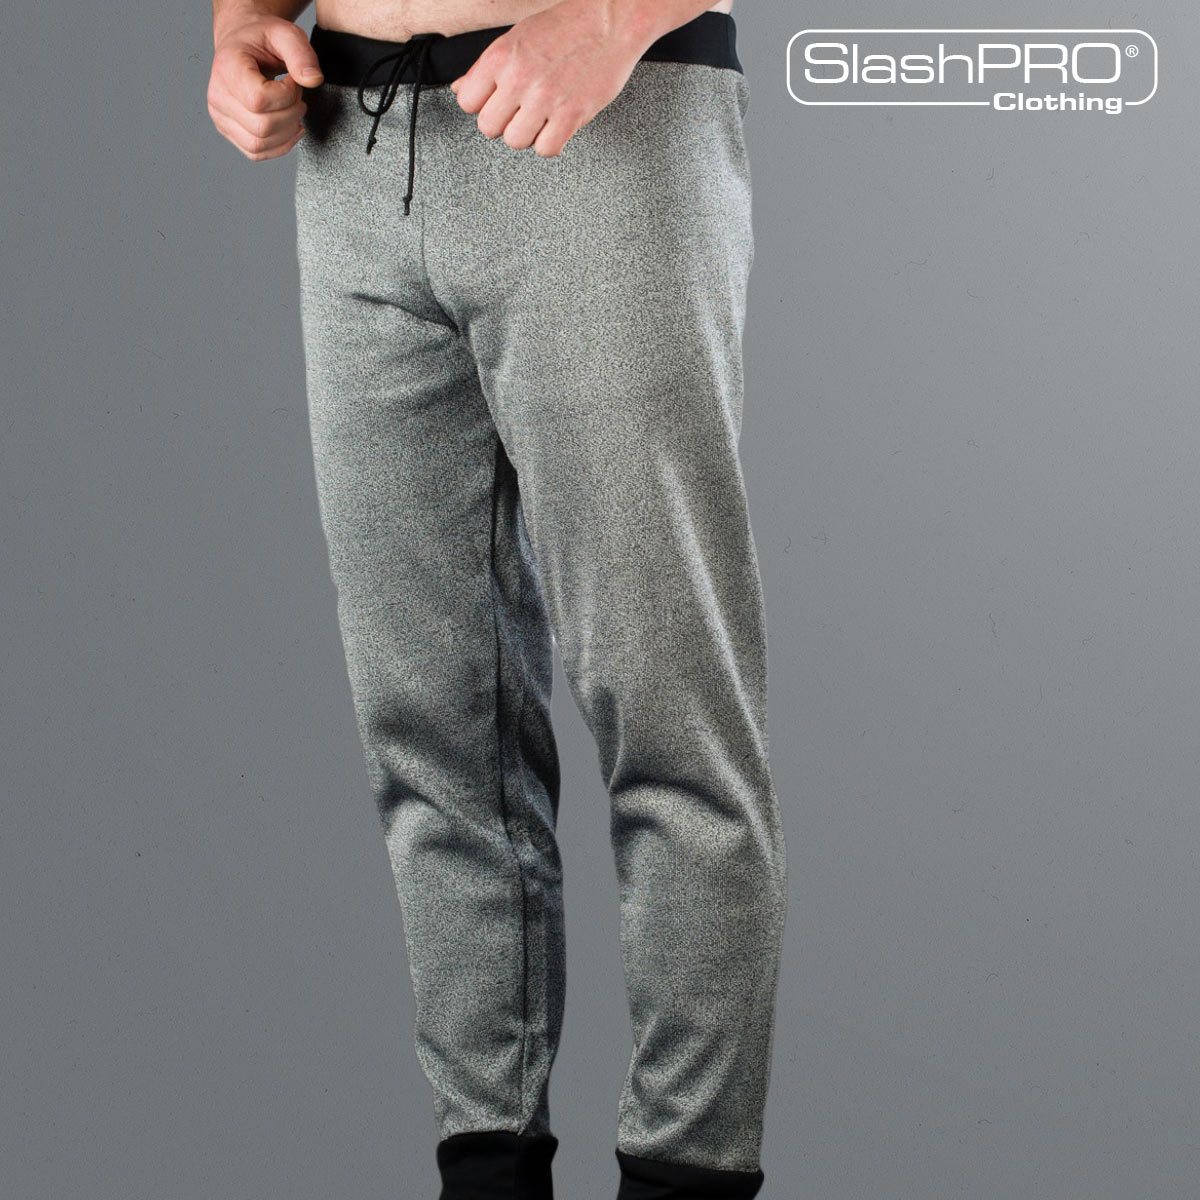 SlashPRO® Slash Resistant Long Johns